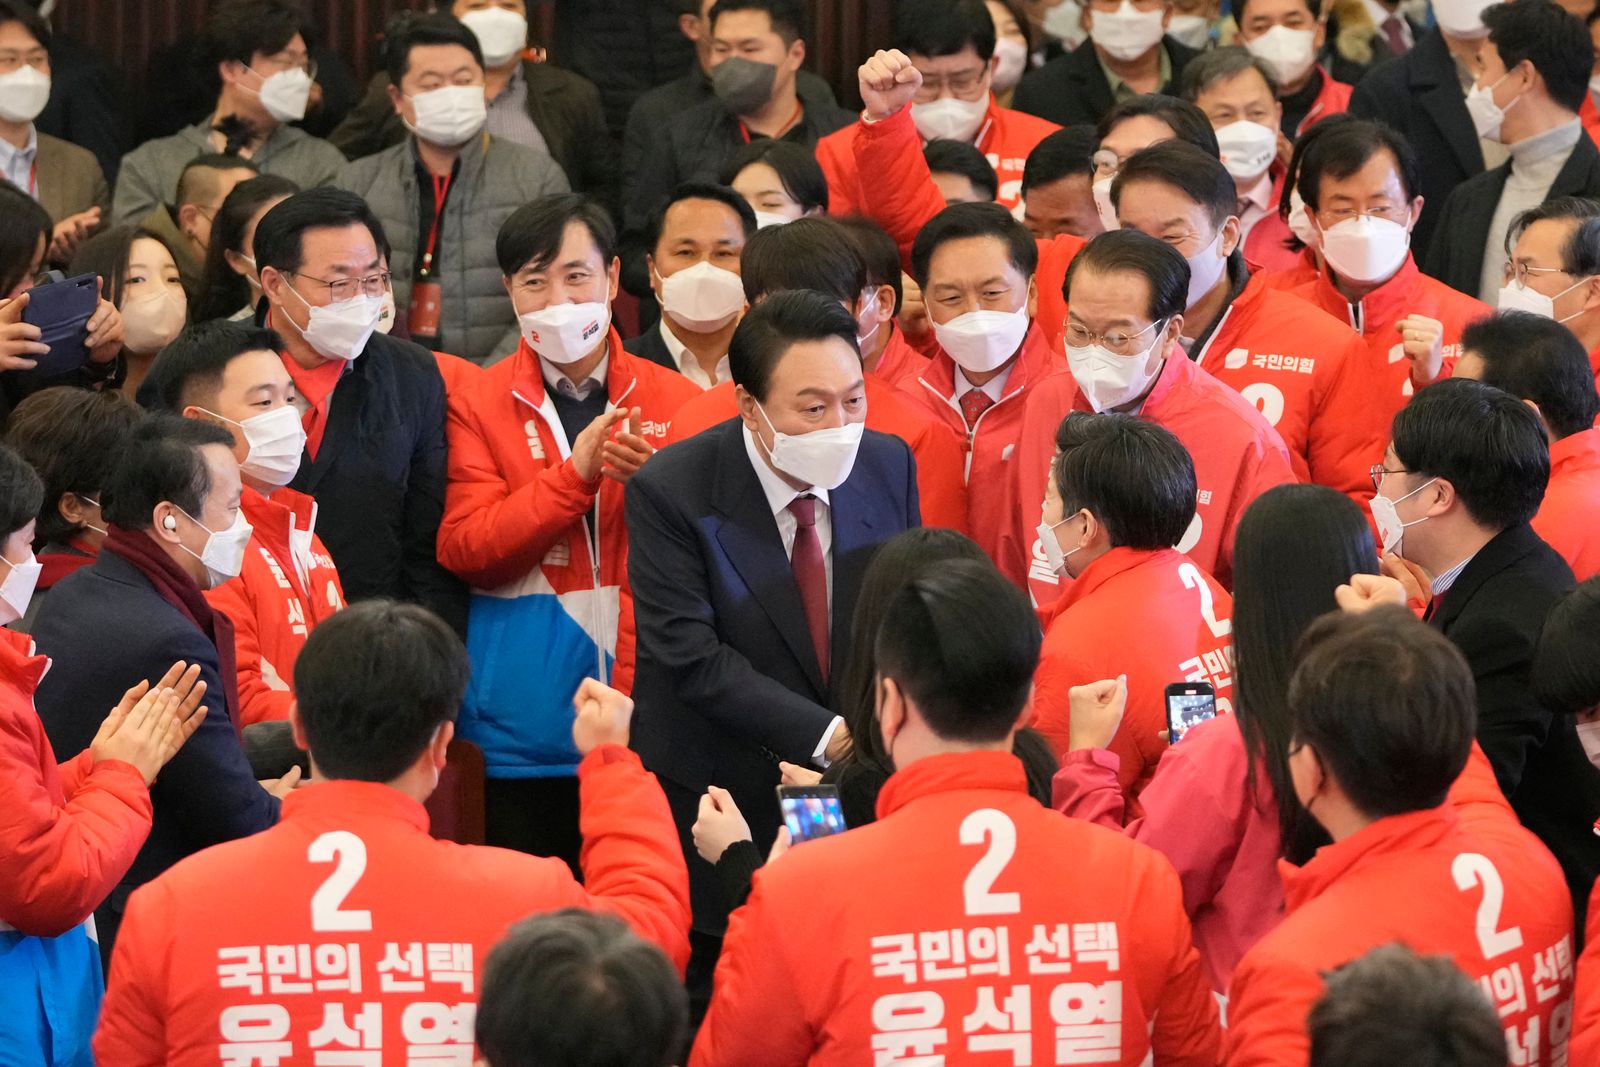 يون سوك-يول يحتفل مع أعضاء حزب سلطة الشعب المعارض - 9 مارس 2022 - AFP